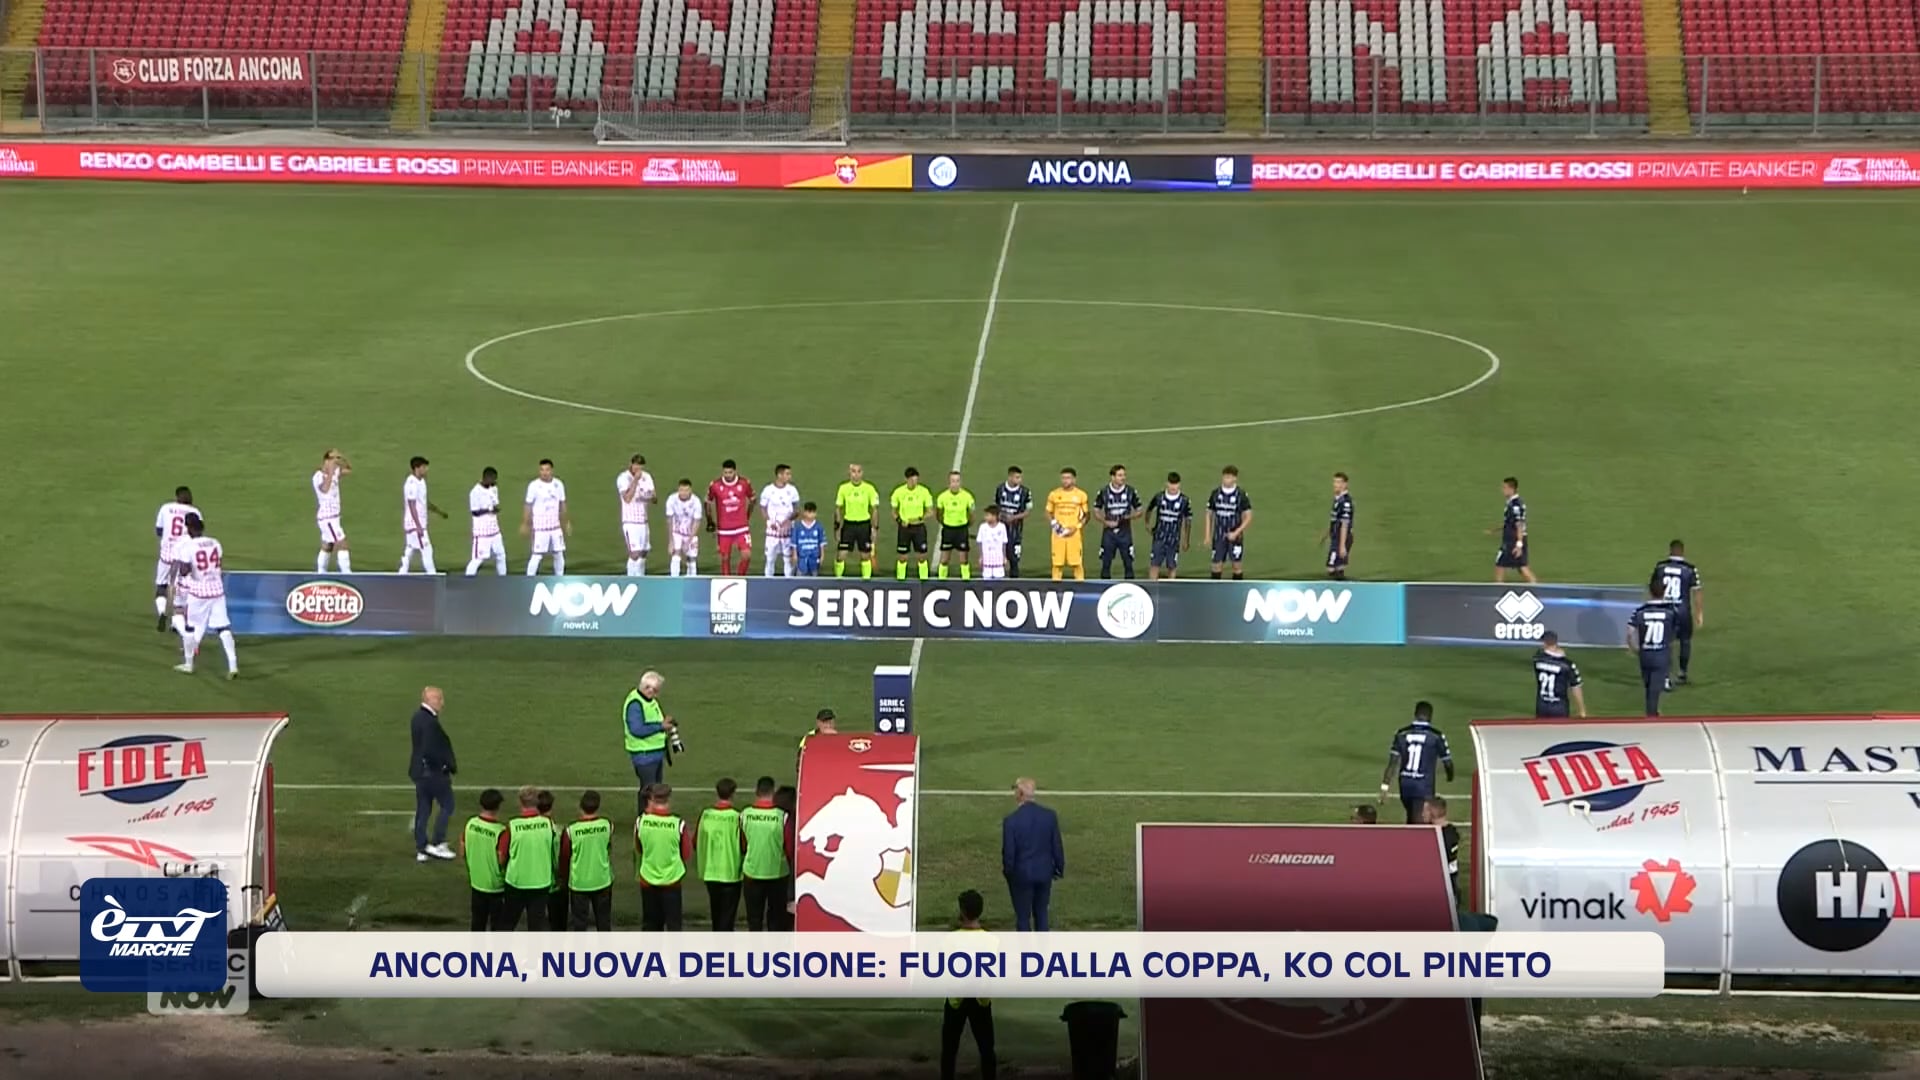 Ancona, nuova delusione. Ko col Pineto e fuori dalla Coppa Italia - VIDEO